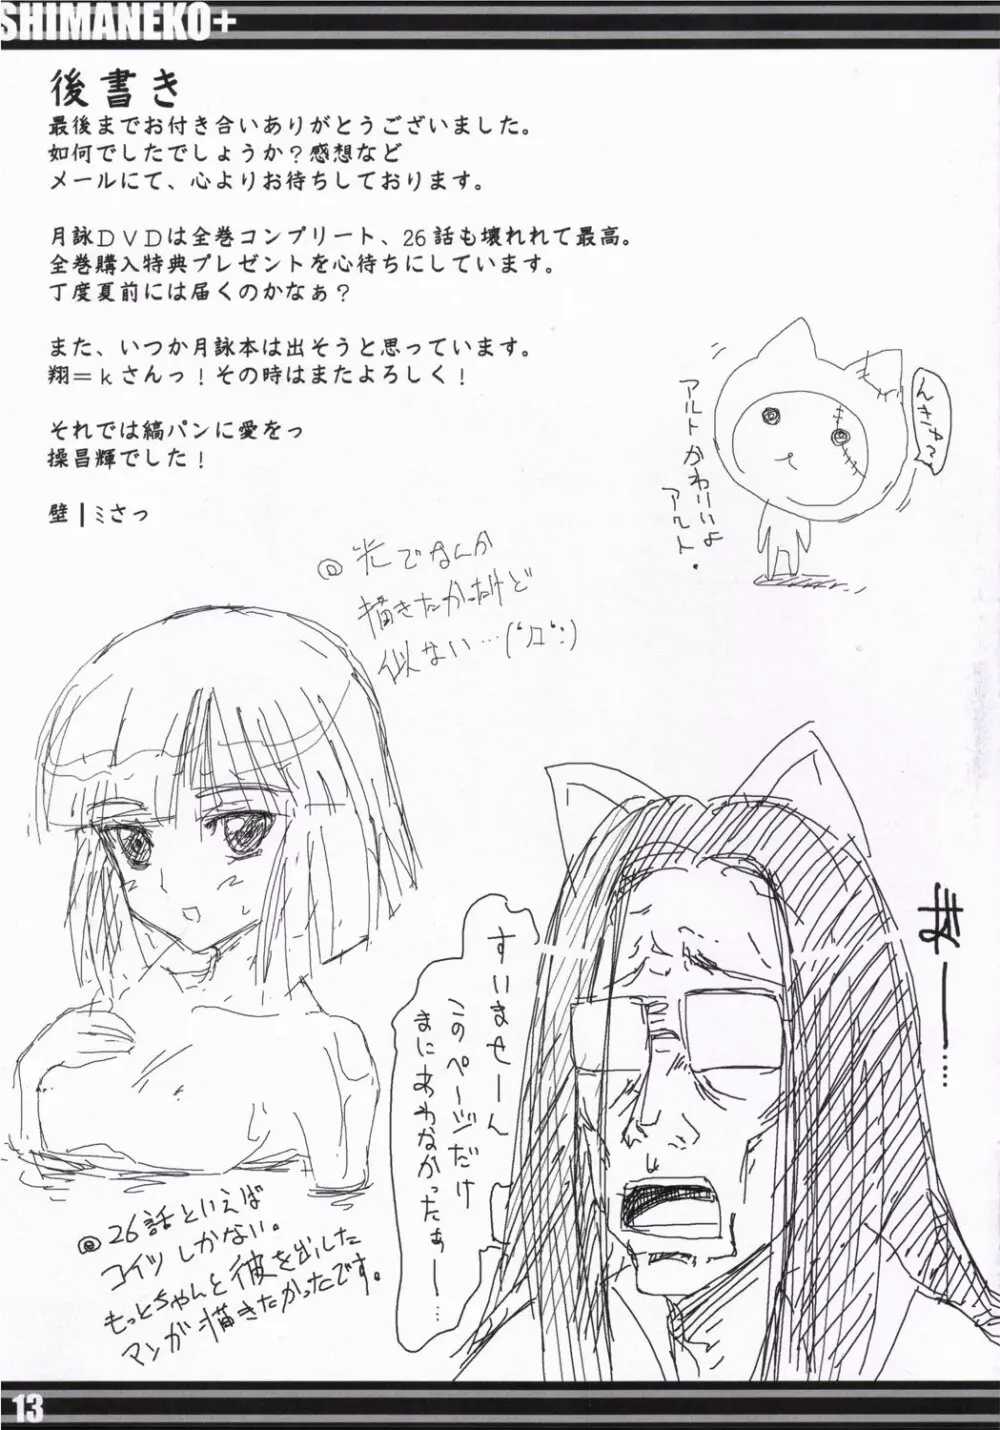 SHIMANEKO+ 12ページ